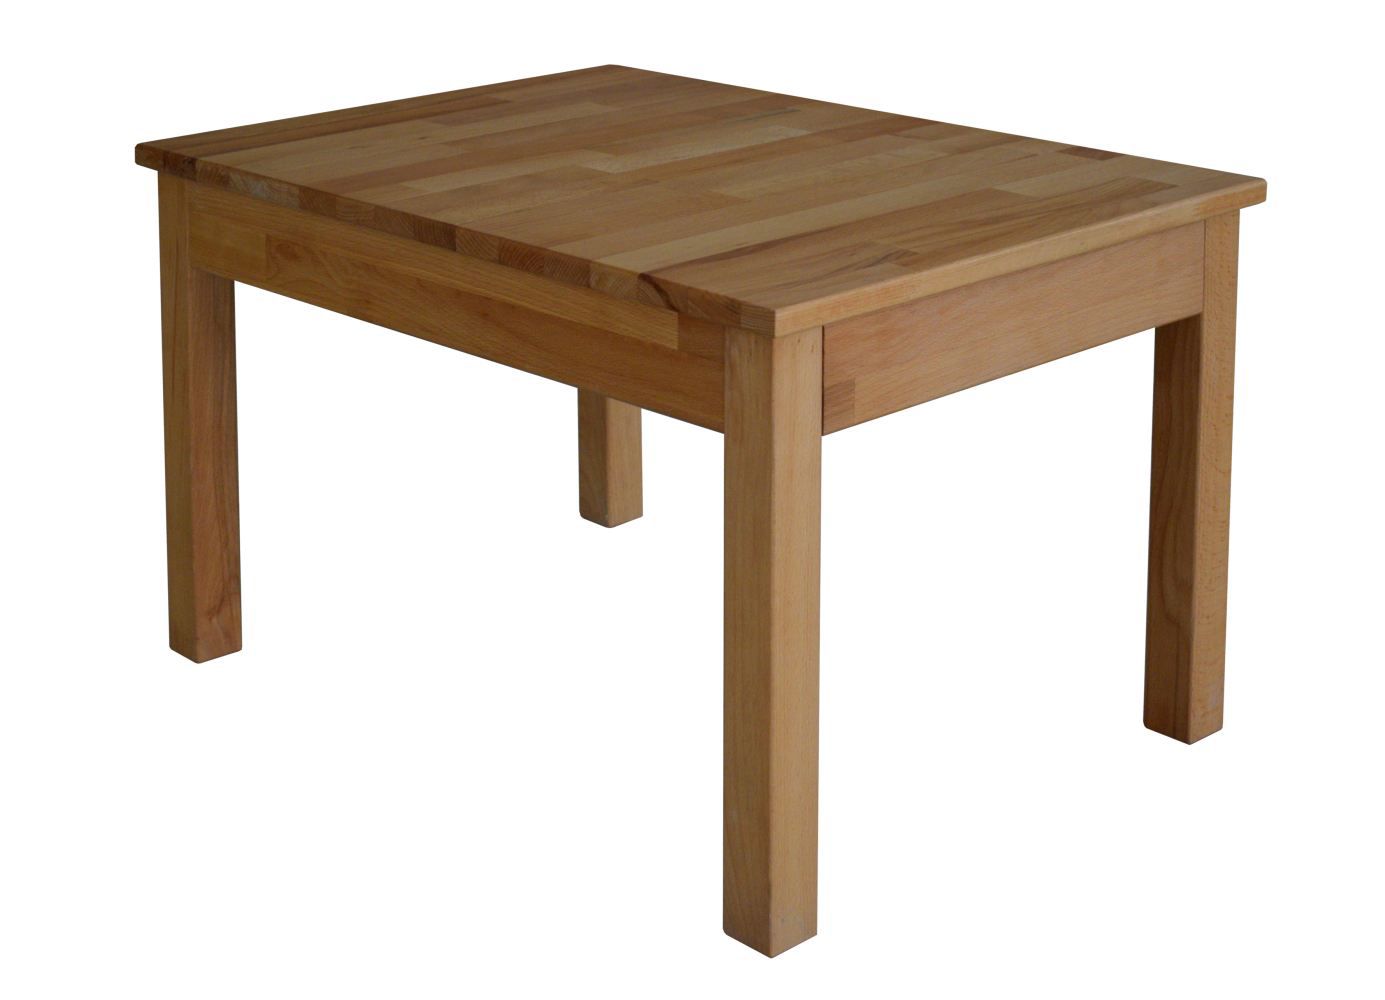 Table basse Wooden Nature 204 hêtre massif huilé naturel - Dimensions : 50 x 70 x 45 cm (L x P x H)